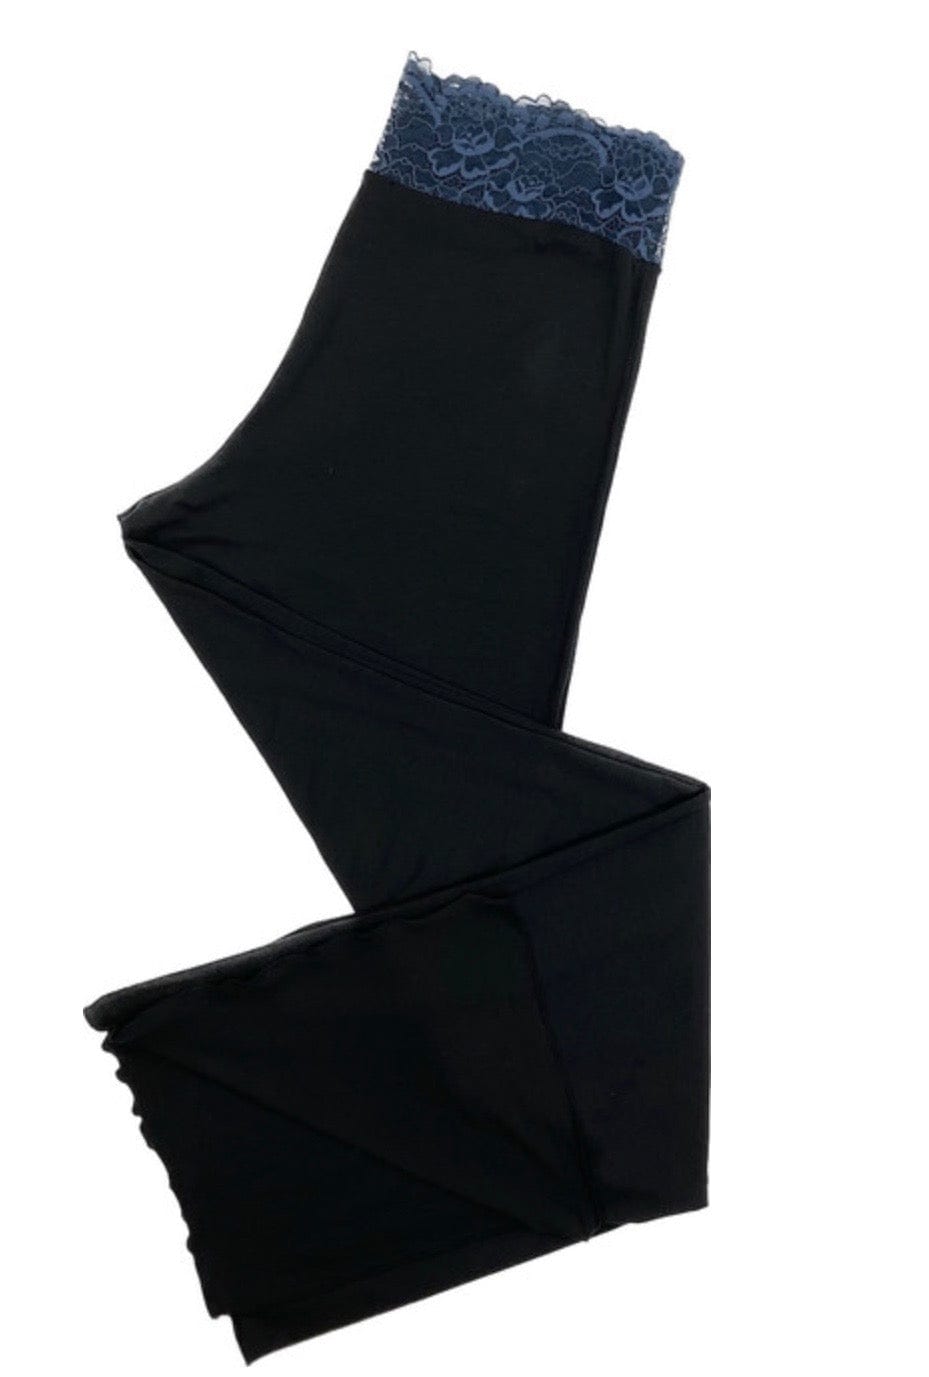 Samantha Chang Pajamas Black/Galaxy Lace / S Samantha Chang Home Apparel Full Length Lace Waist Pant